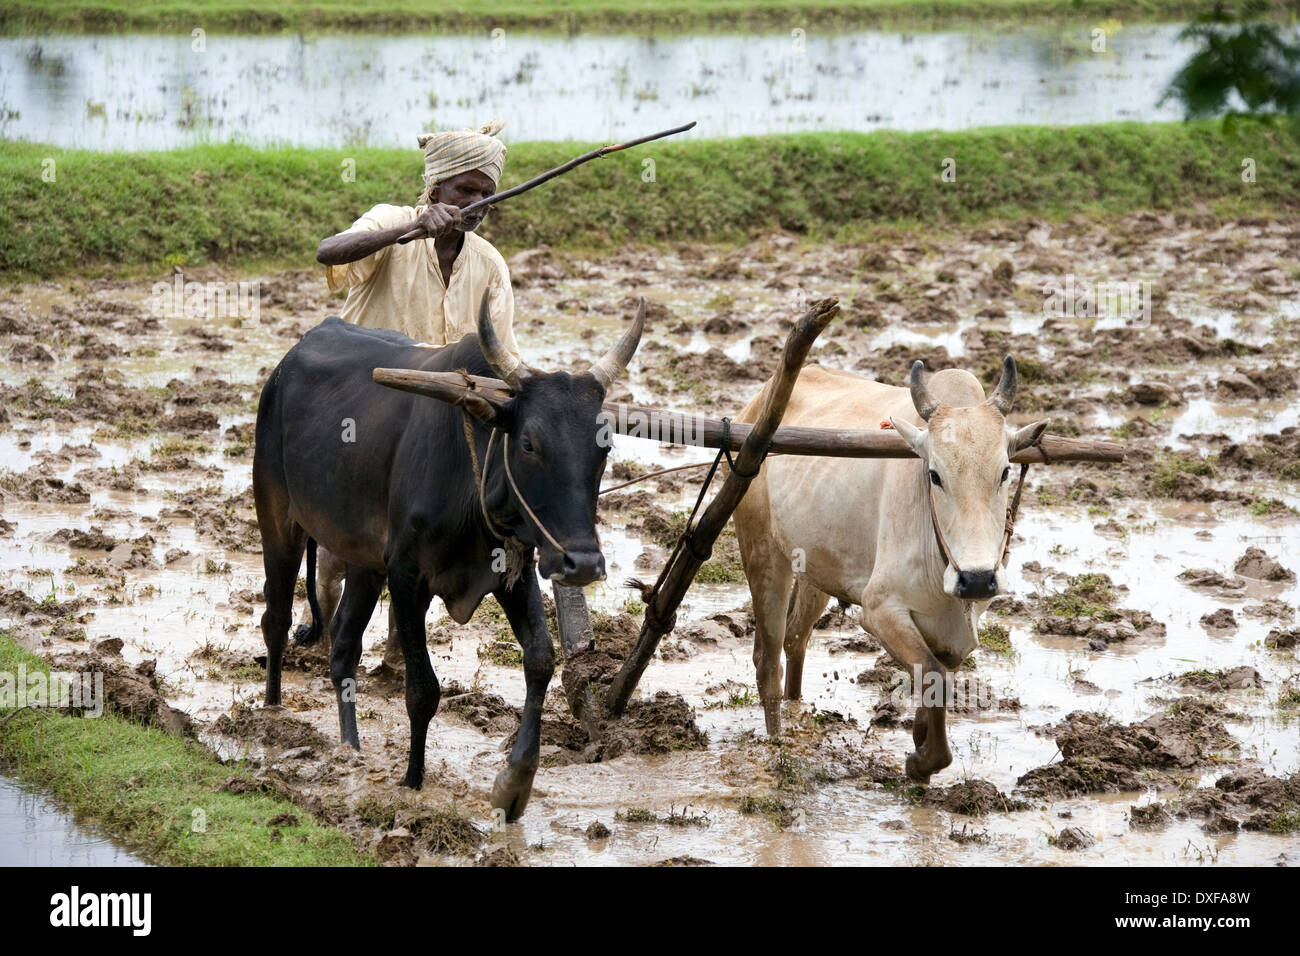 Agricultor de subsistencia campesina arar un campo de arroz en el distrito de Chettinad la región Tamil Nadu del sur de la India. Foto de stock